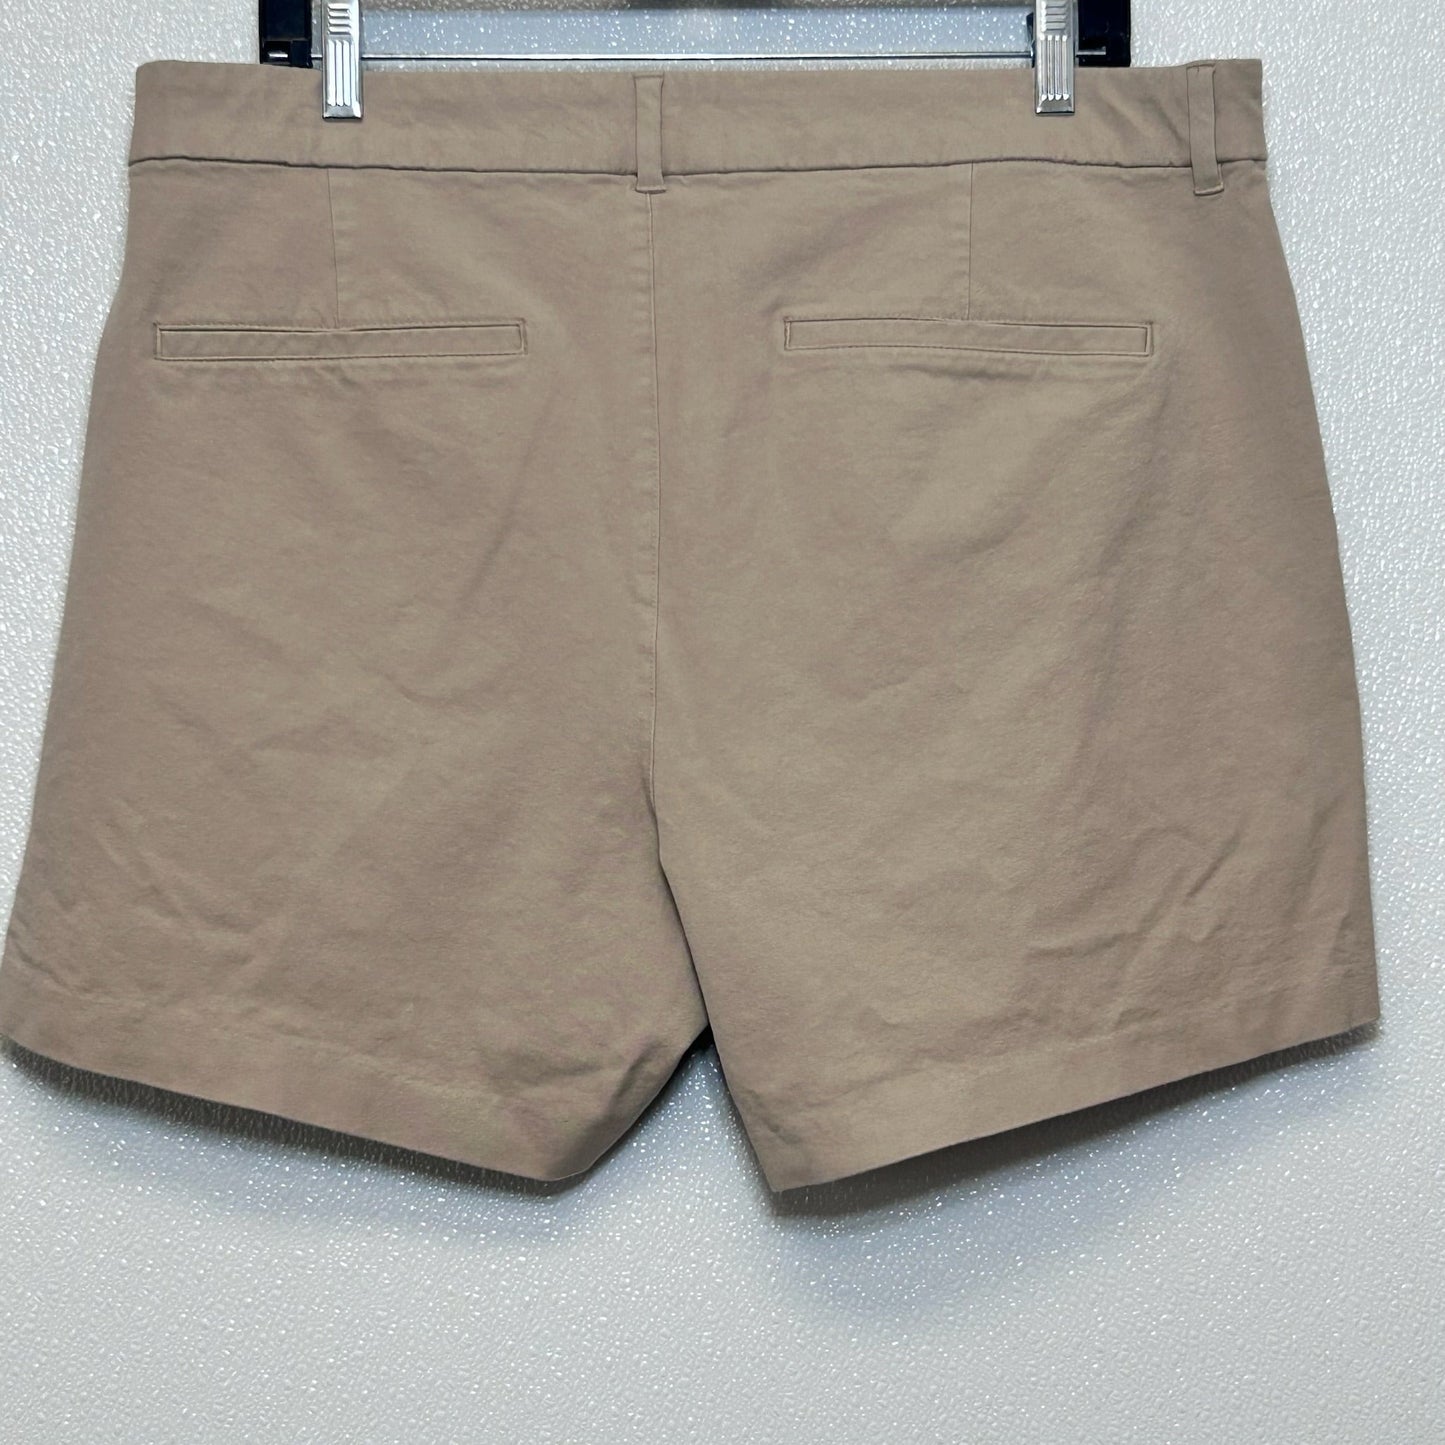 Khaki Shorts Old Navy O, Size 16